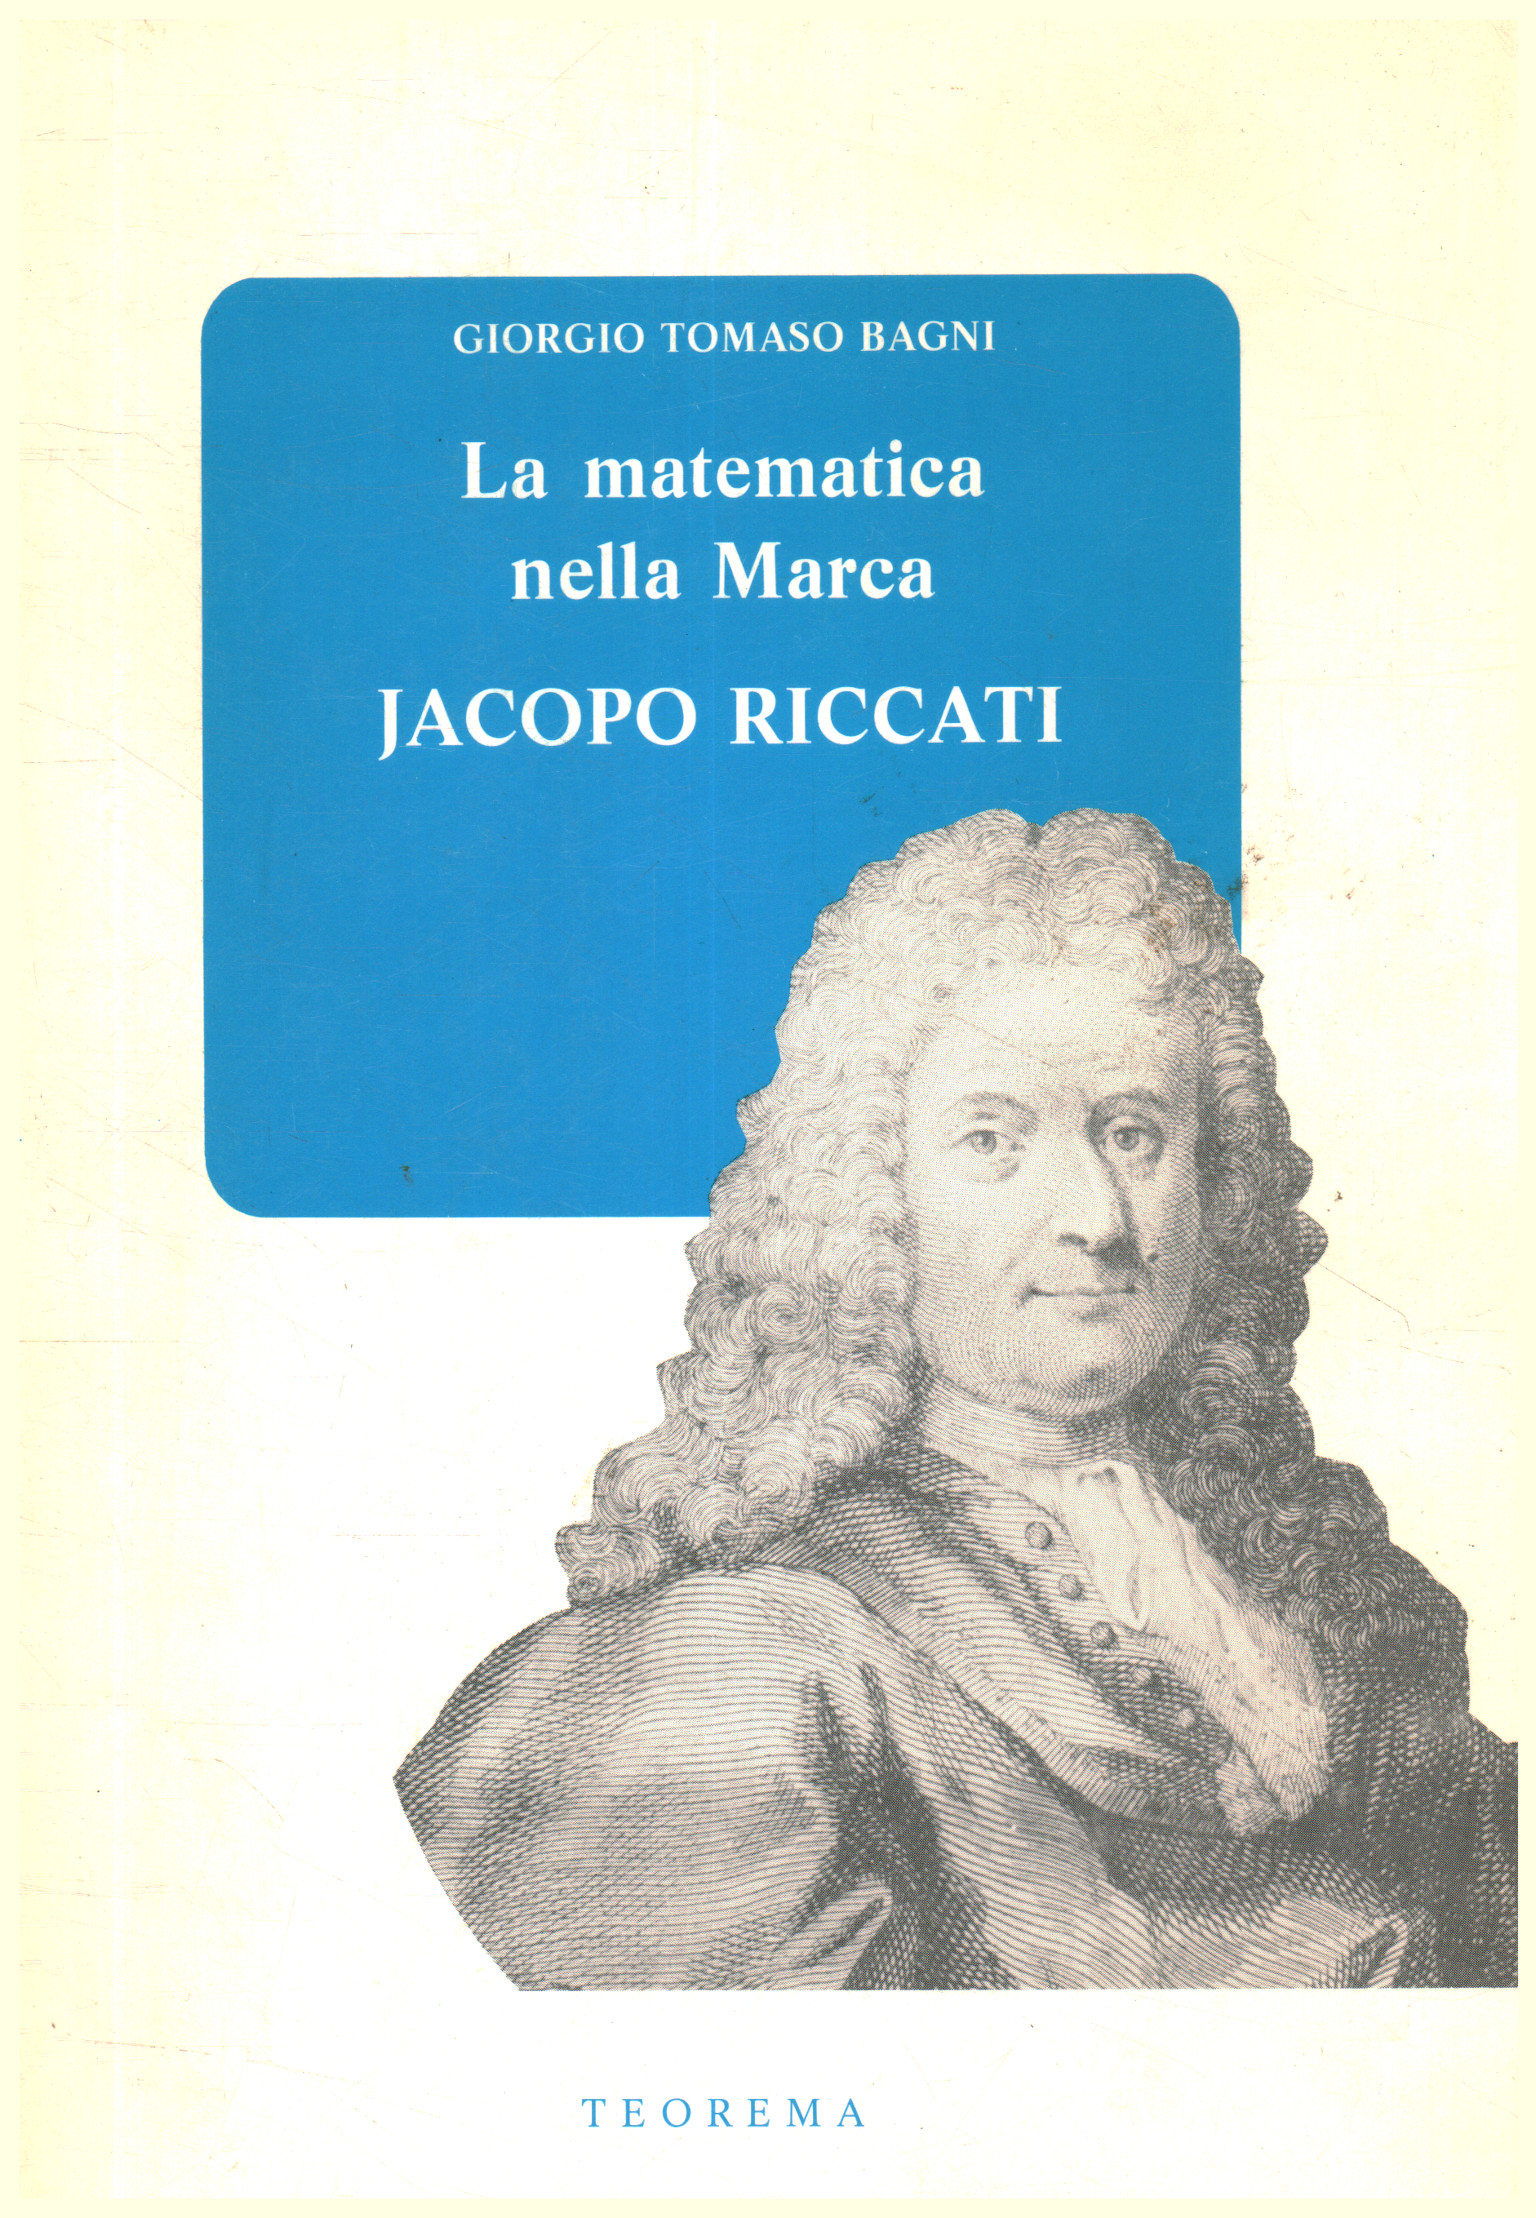 Les mathématiques dans la marque : Jacopo Riccat